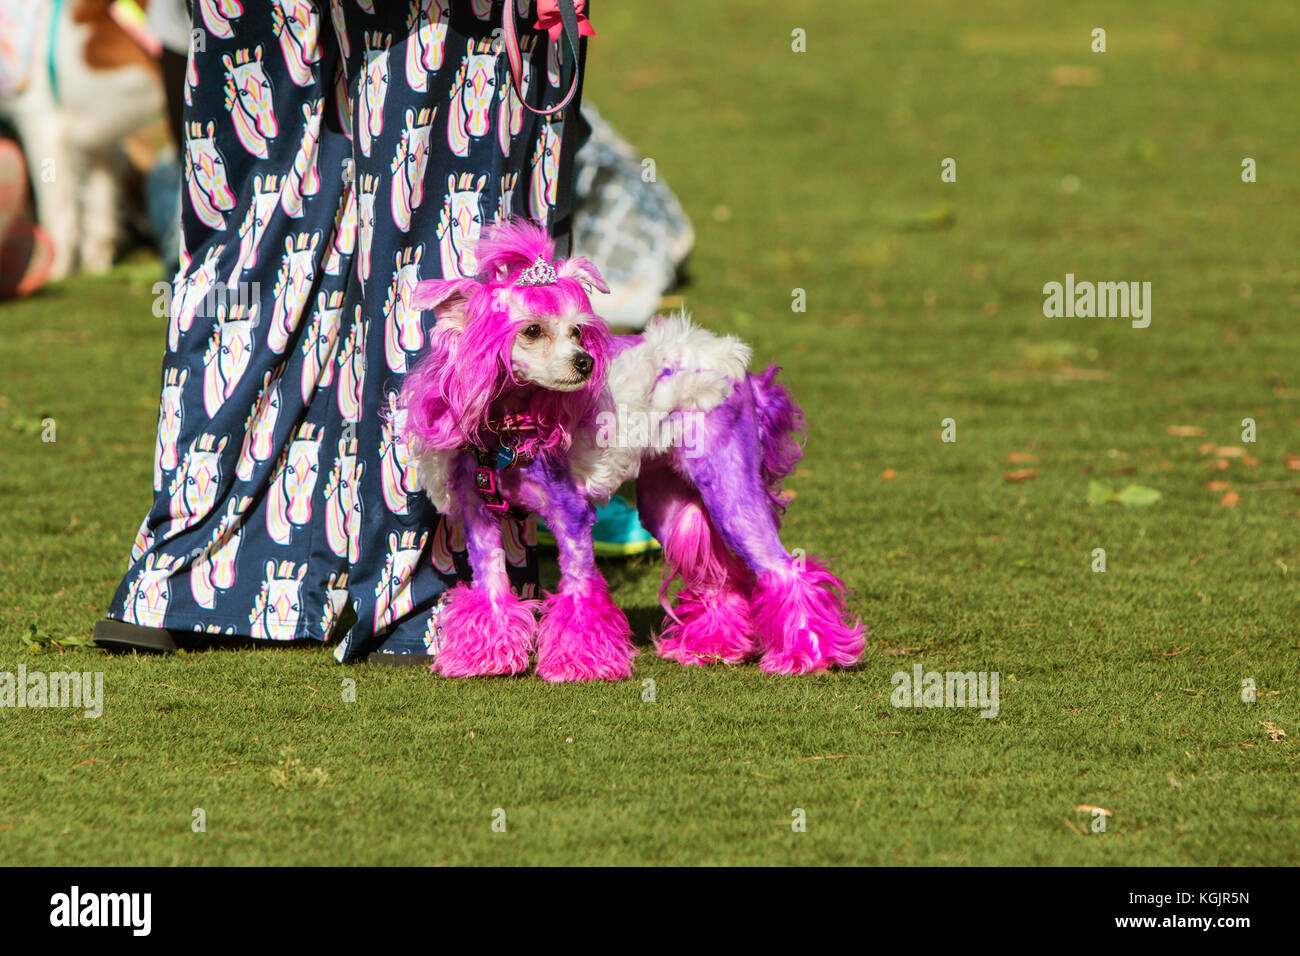 Suwanee, GA, USA - Mai 6, 2017: ein Pudel mit Fell gefärbt Lila und trägt eine Tiara, steht mit seinem Besitzer in einem Park am Woofstock, ein Hund Festival. Stockfoto